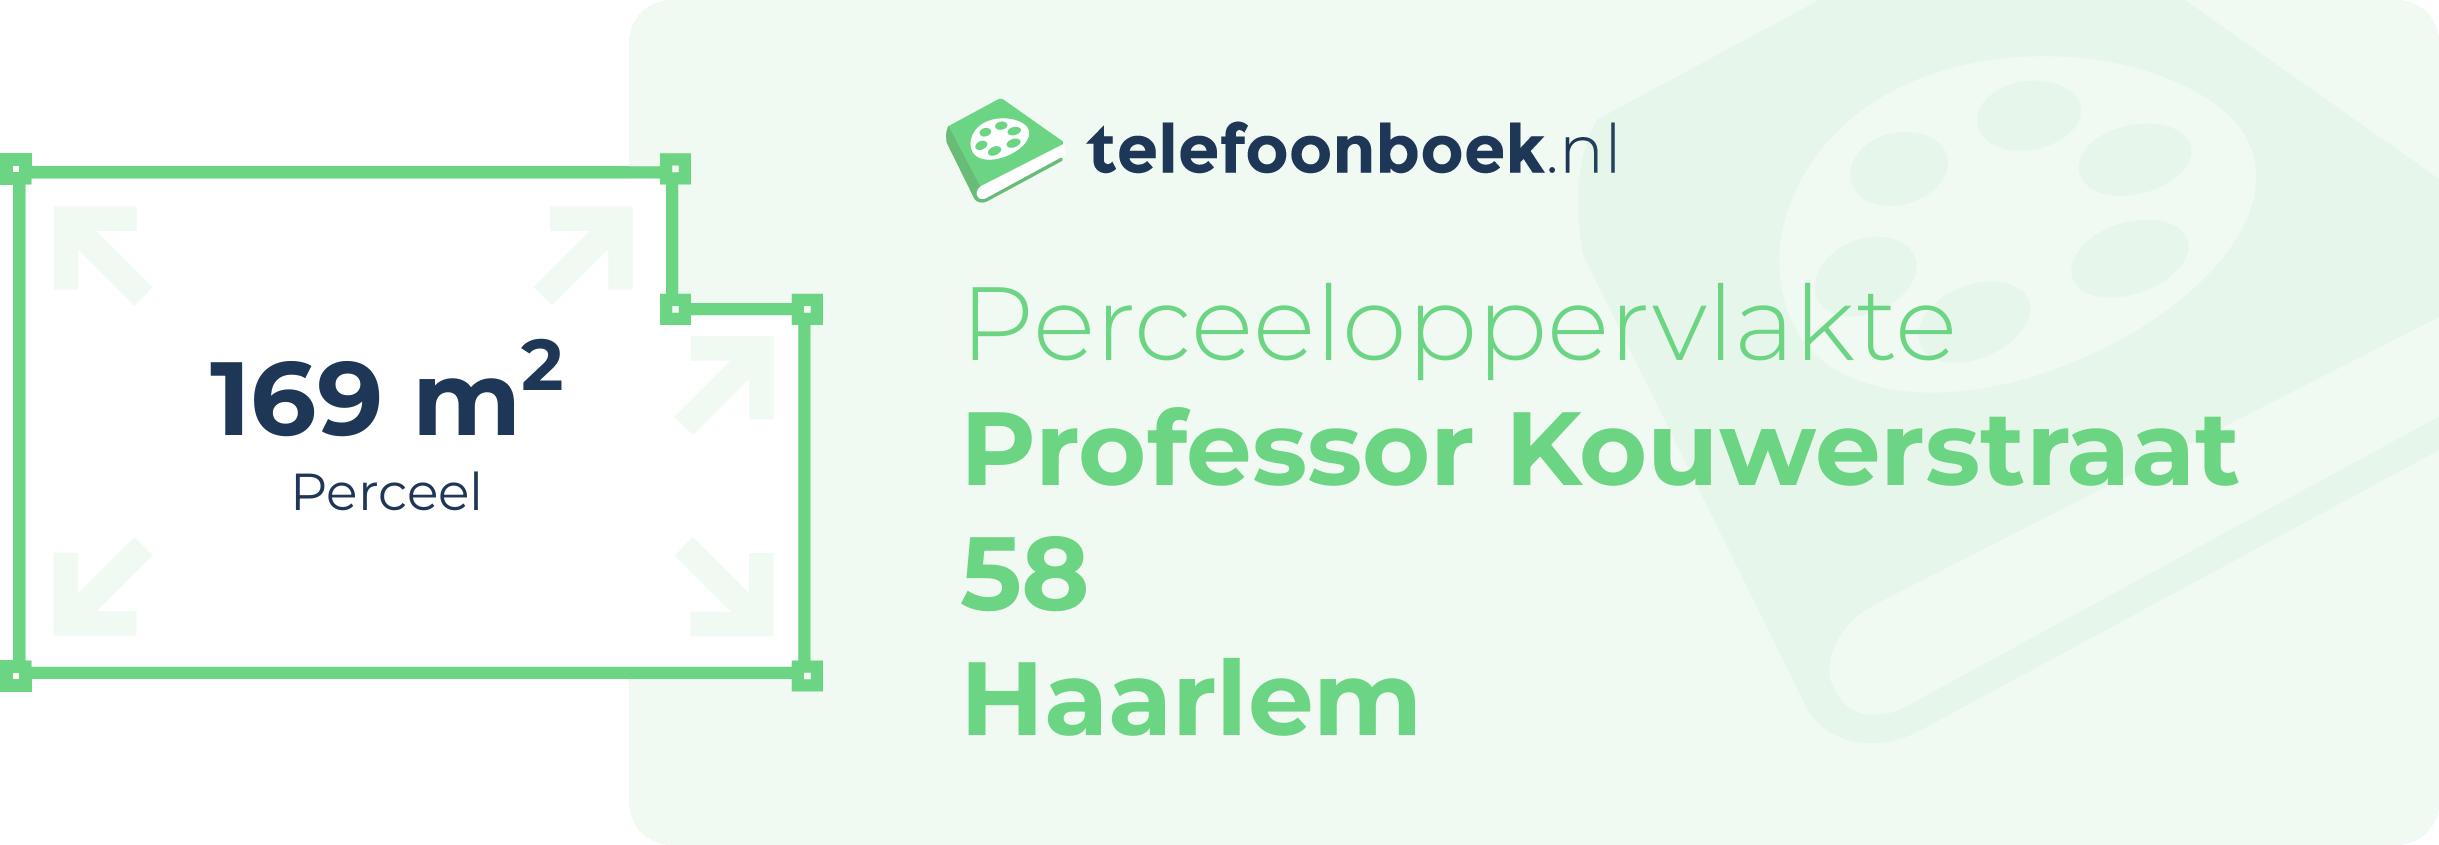 Perceeloppervlakte Professor Kouwerstraat 58 Haarlem